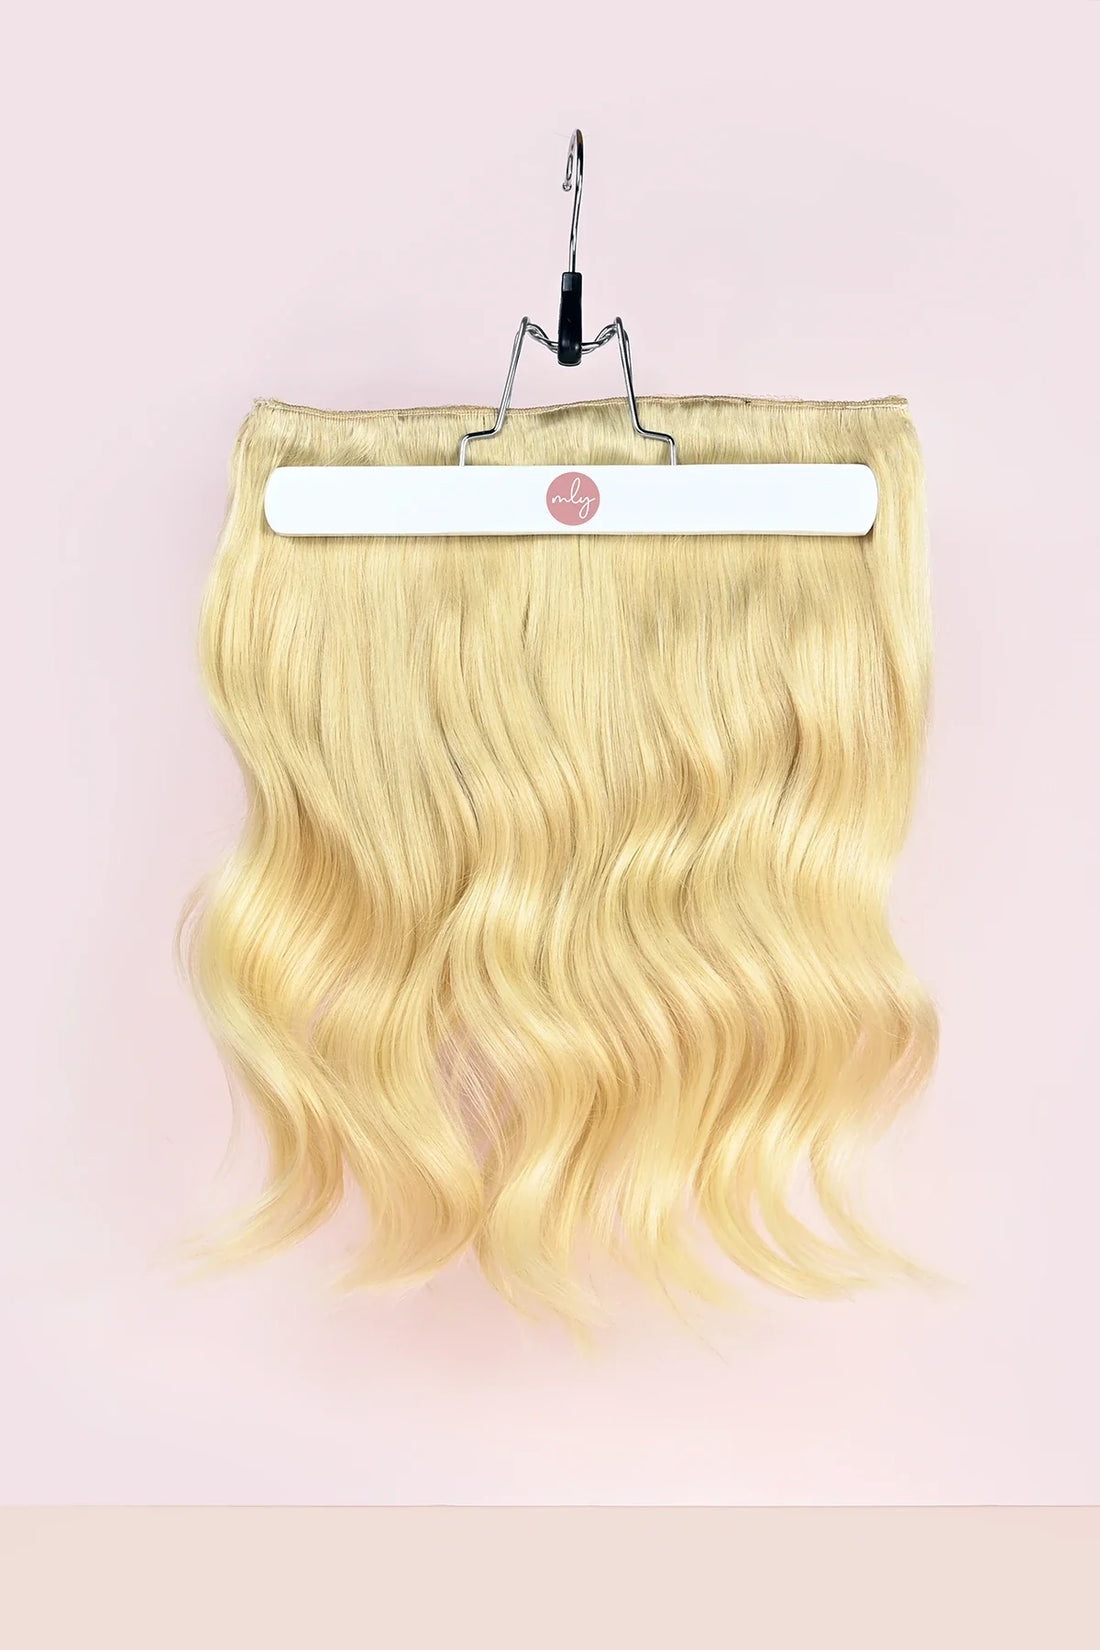 Bleach blonde geel blonde clip in hairextensions met een warm gele ondertoon. Geef je haar meer volume met clip in hair extensions van MLY Hairextensions. Goedkope extensions maar ook de beste hairextensions van Nederland.